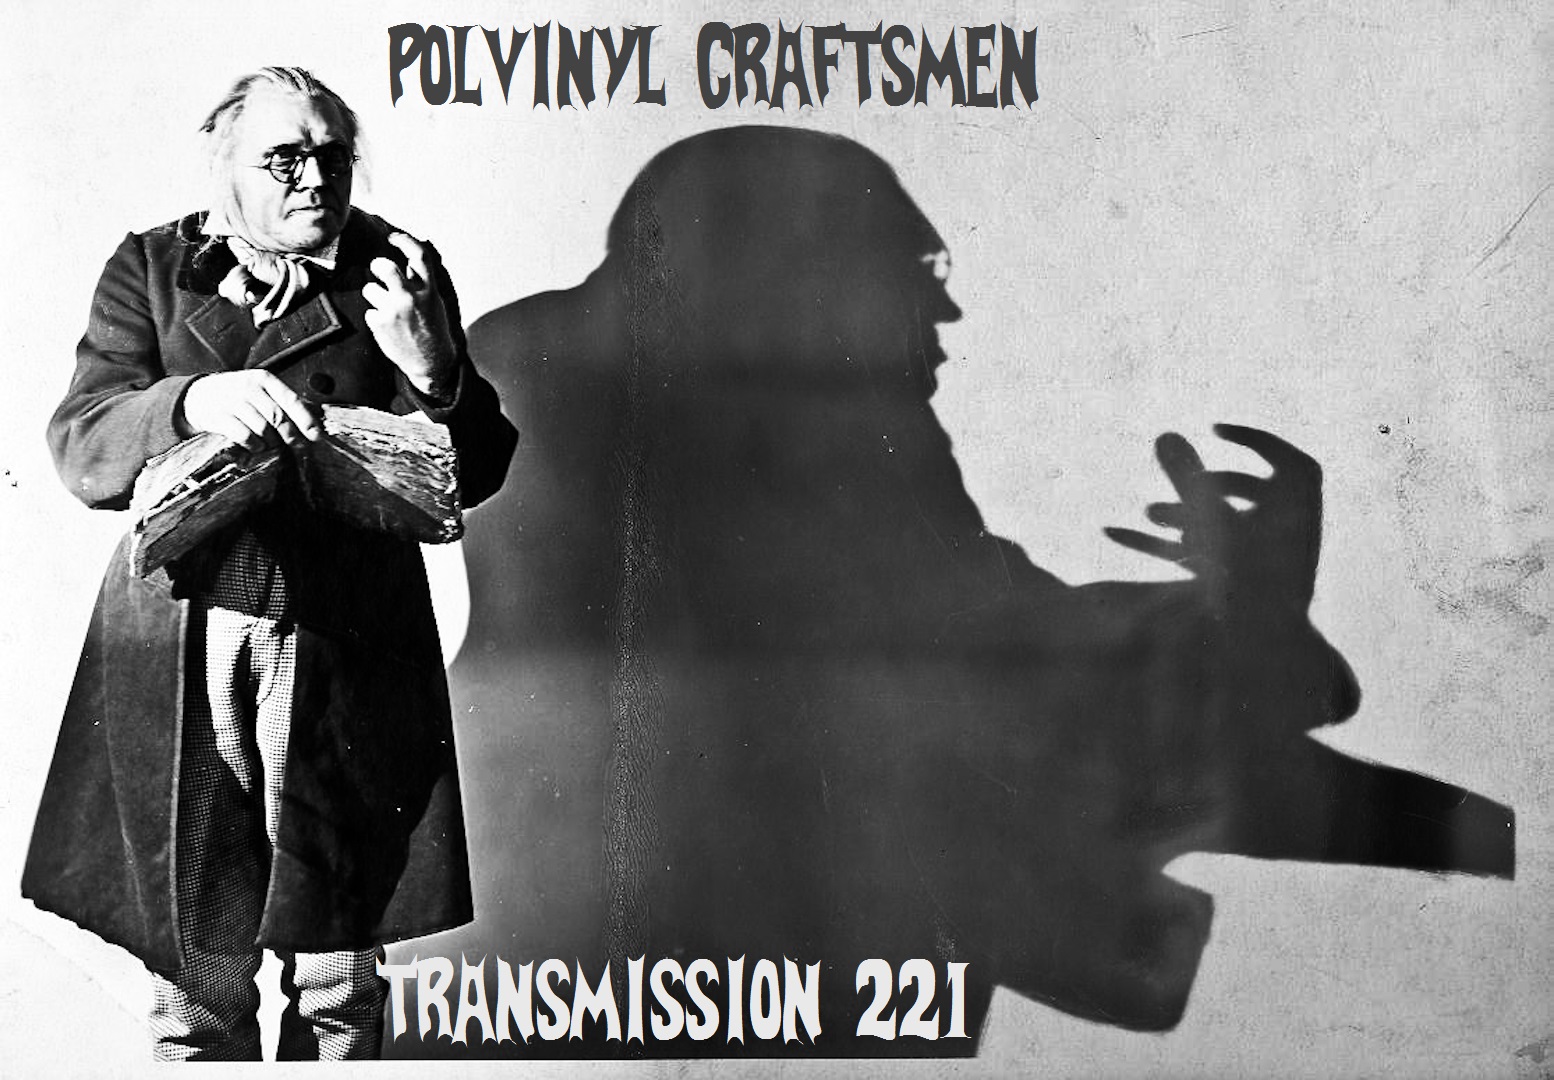  Polyvinyl Craftsmen Transmission 221